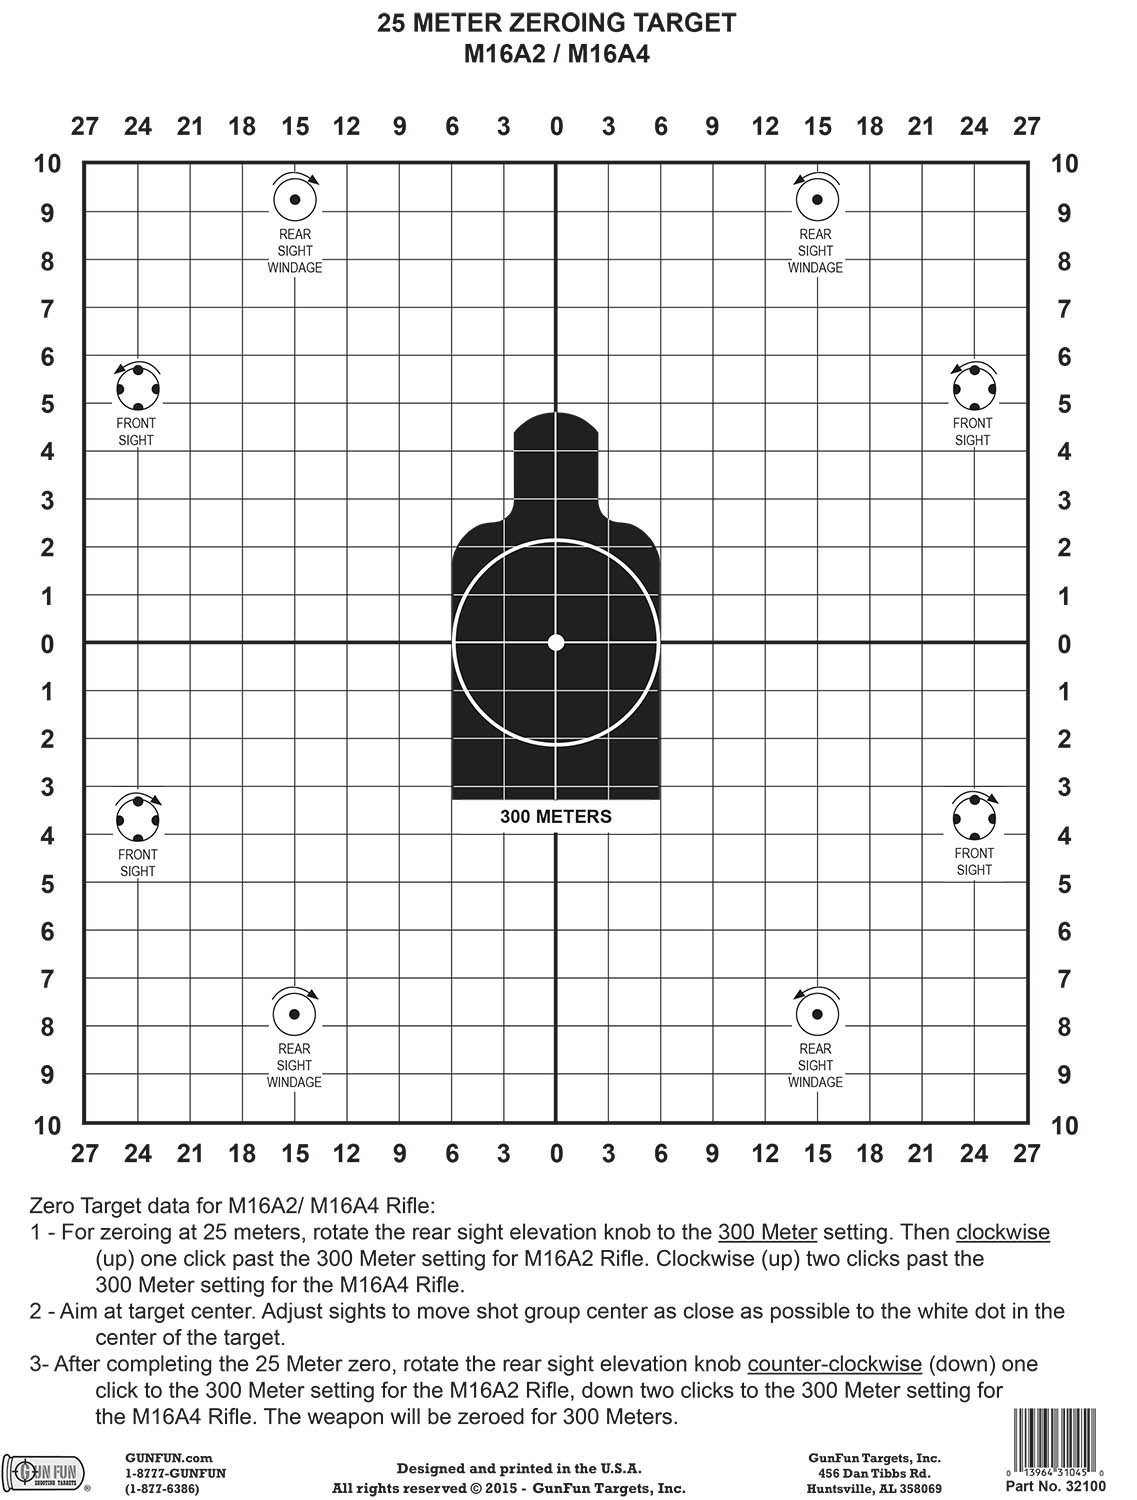 25 meter zeroing target pdf